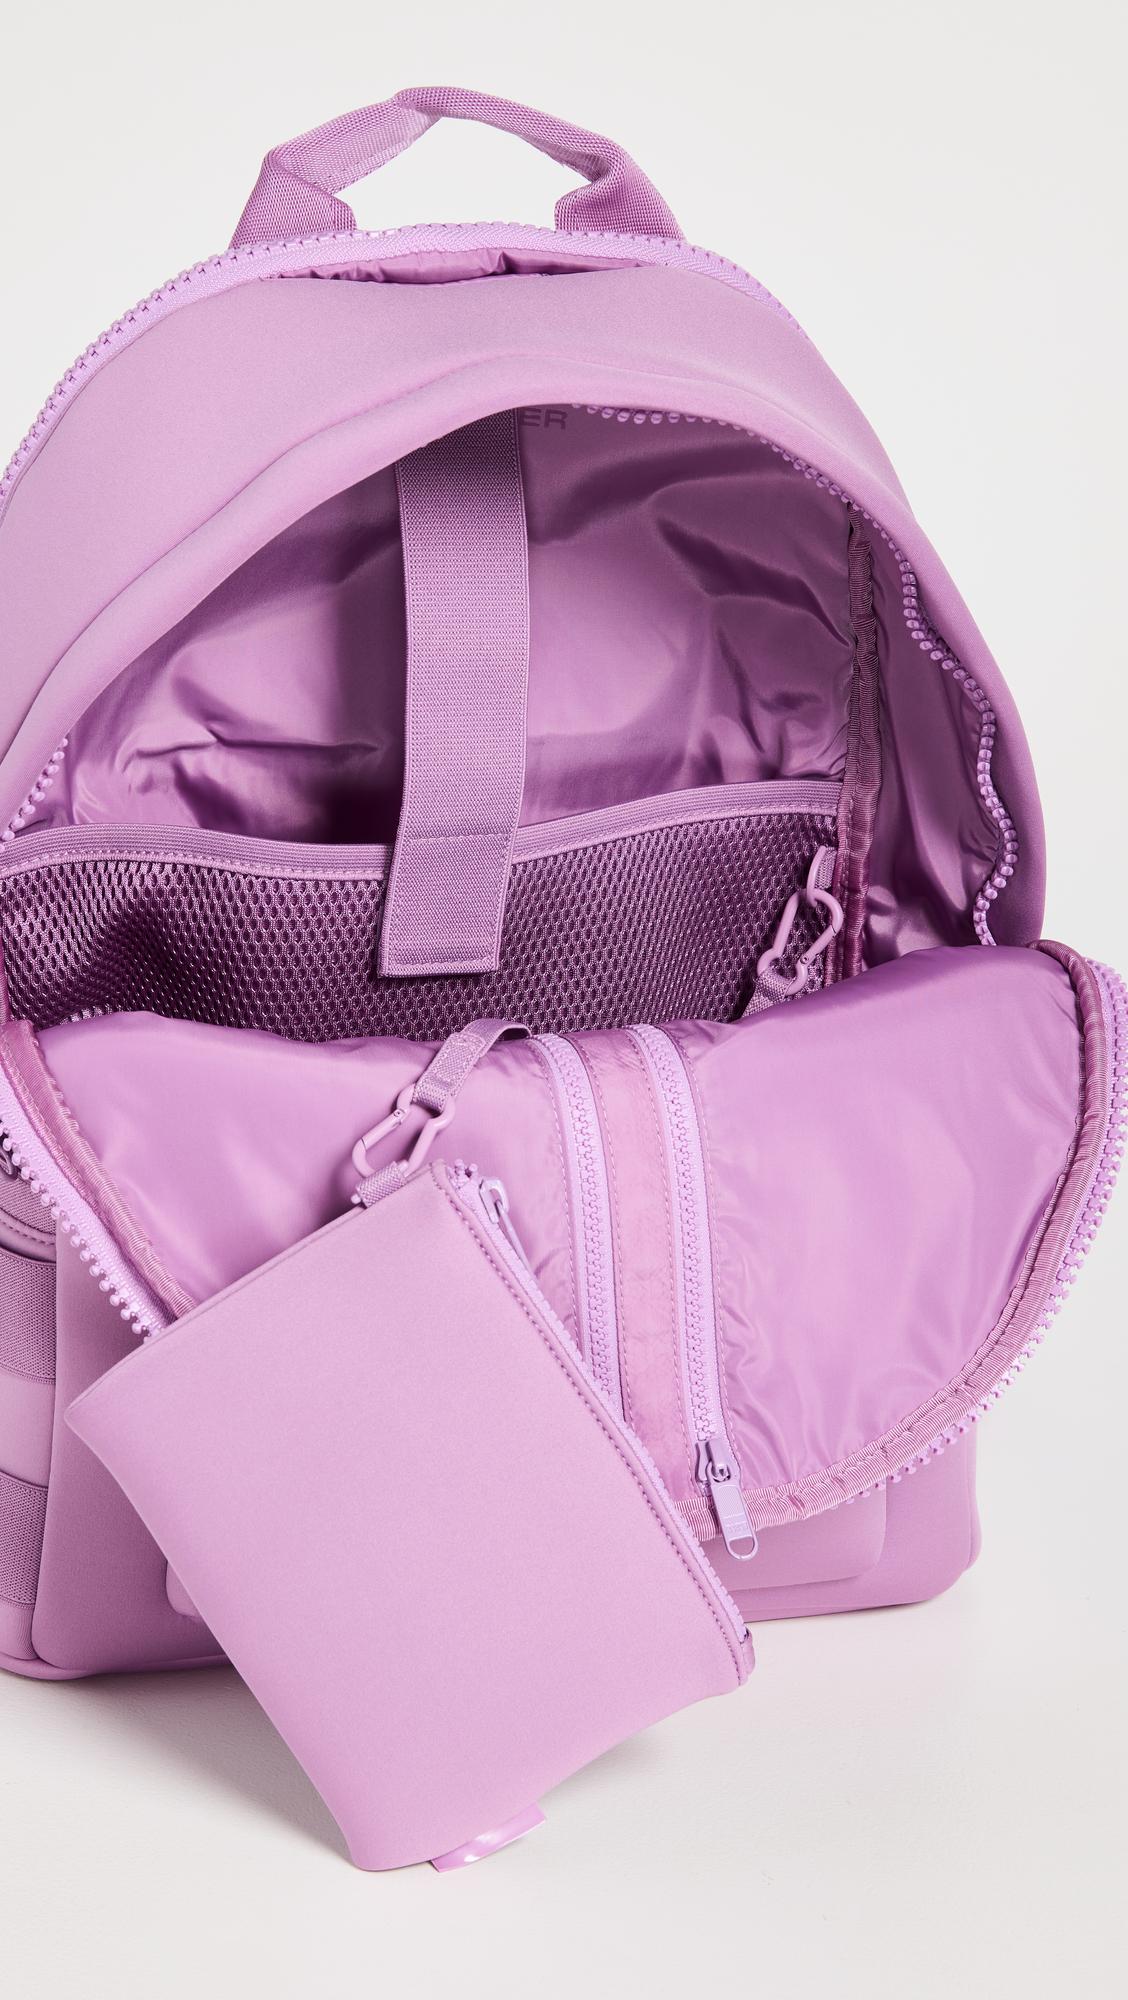 Dagne Dover Purple Backpacks for Women